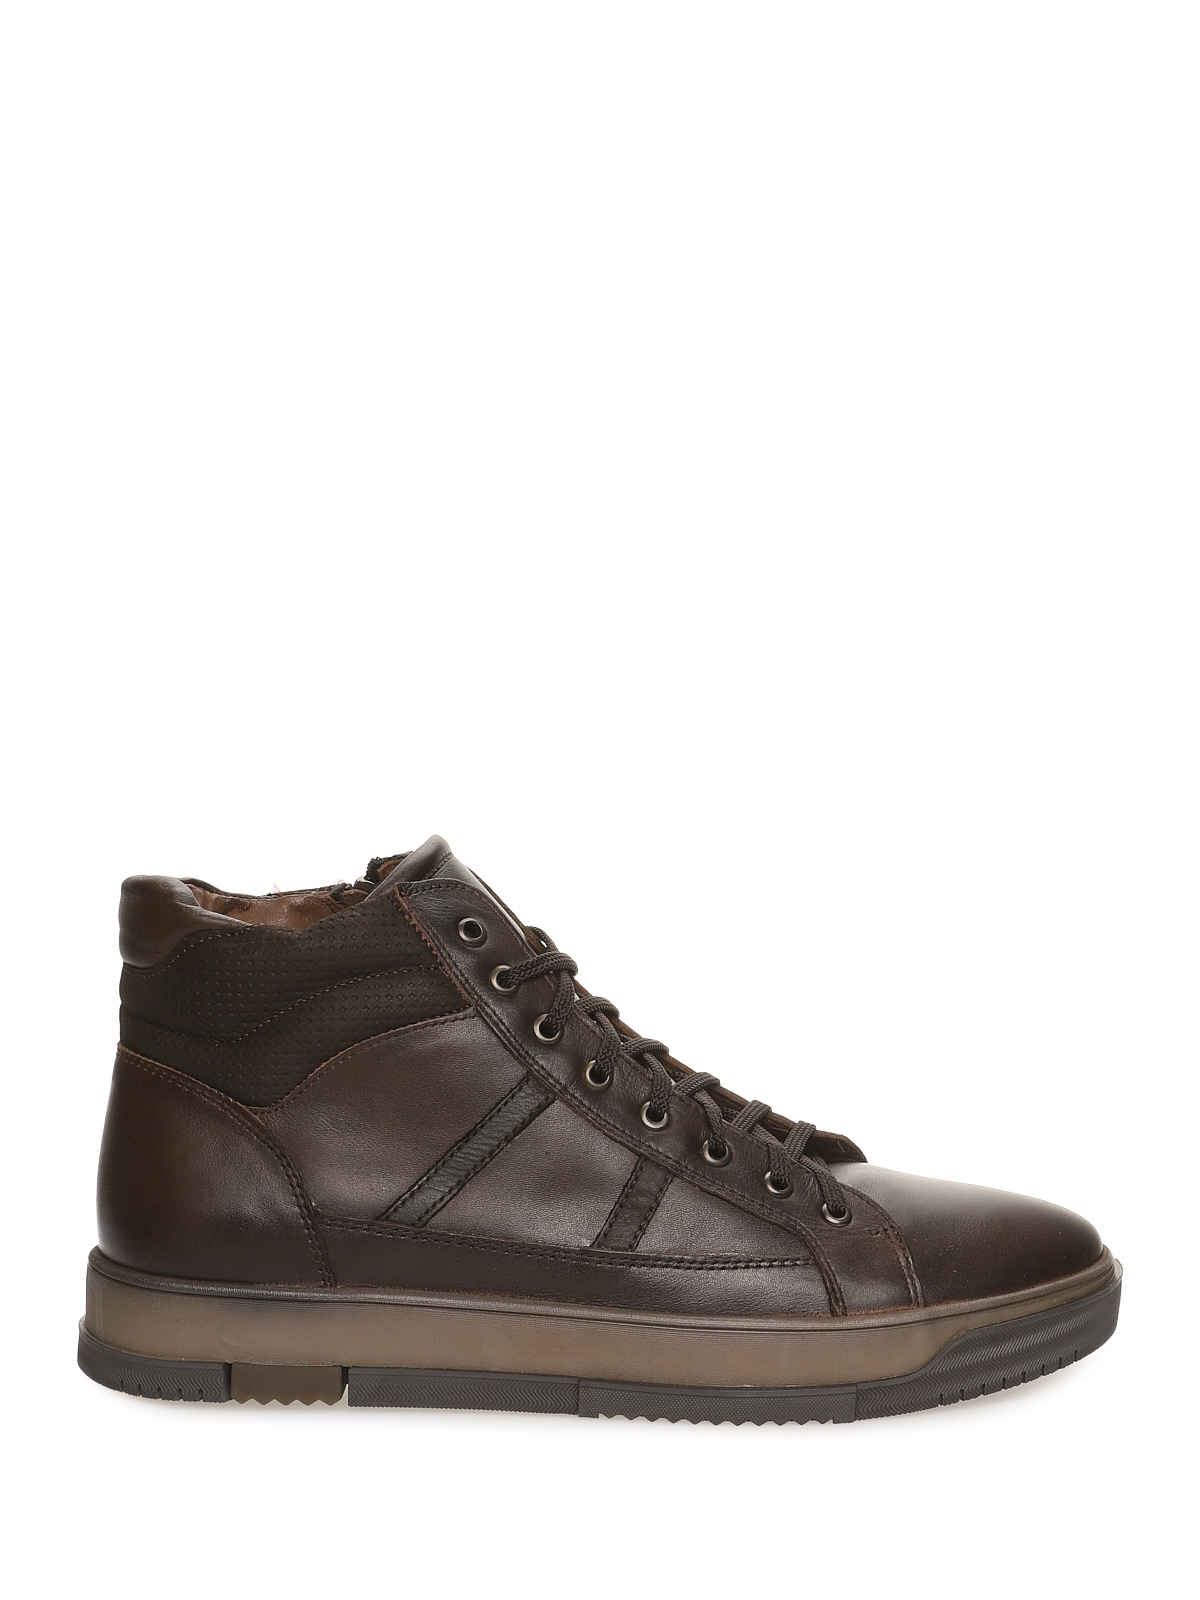 Ботинки мужские VALSER 601-108 коричневые 44 RU